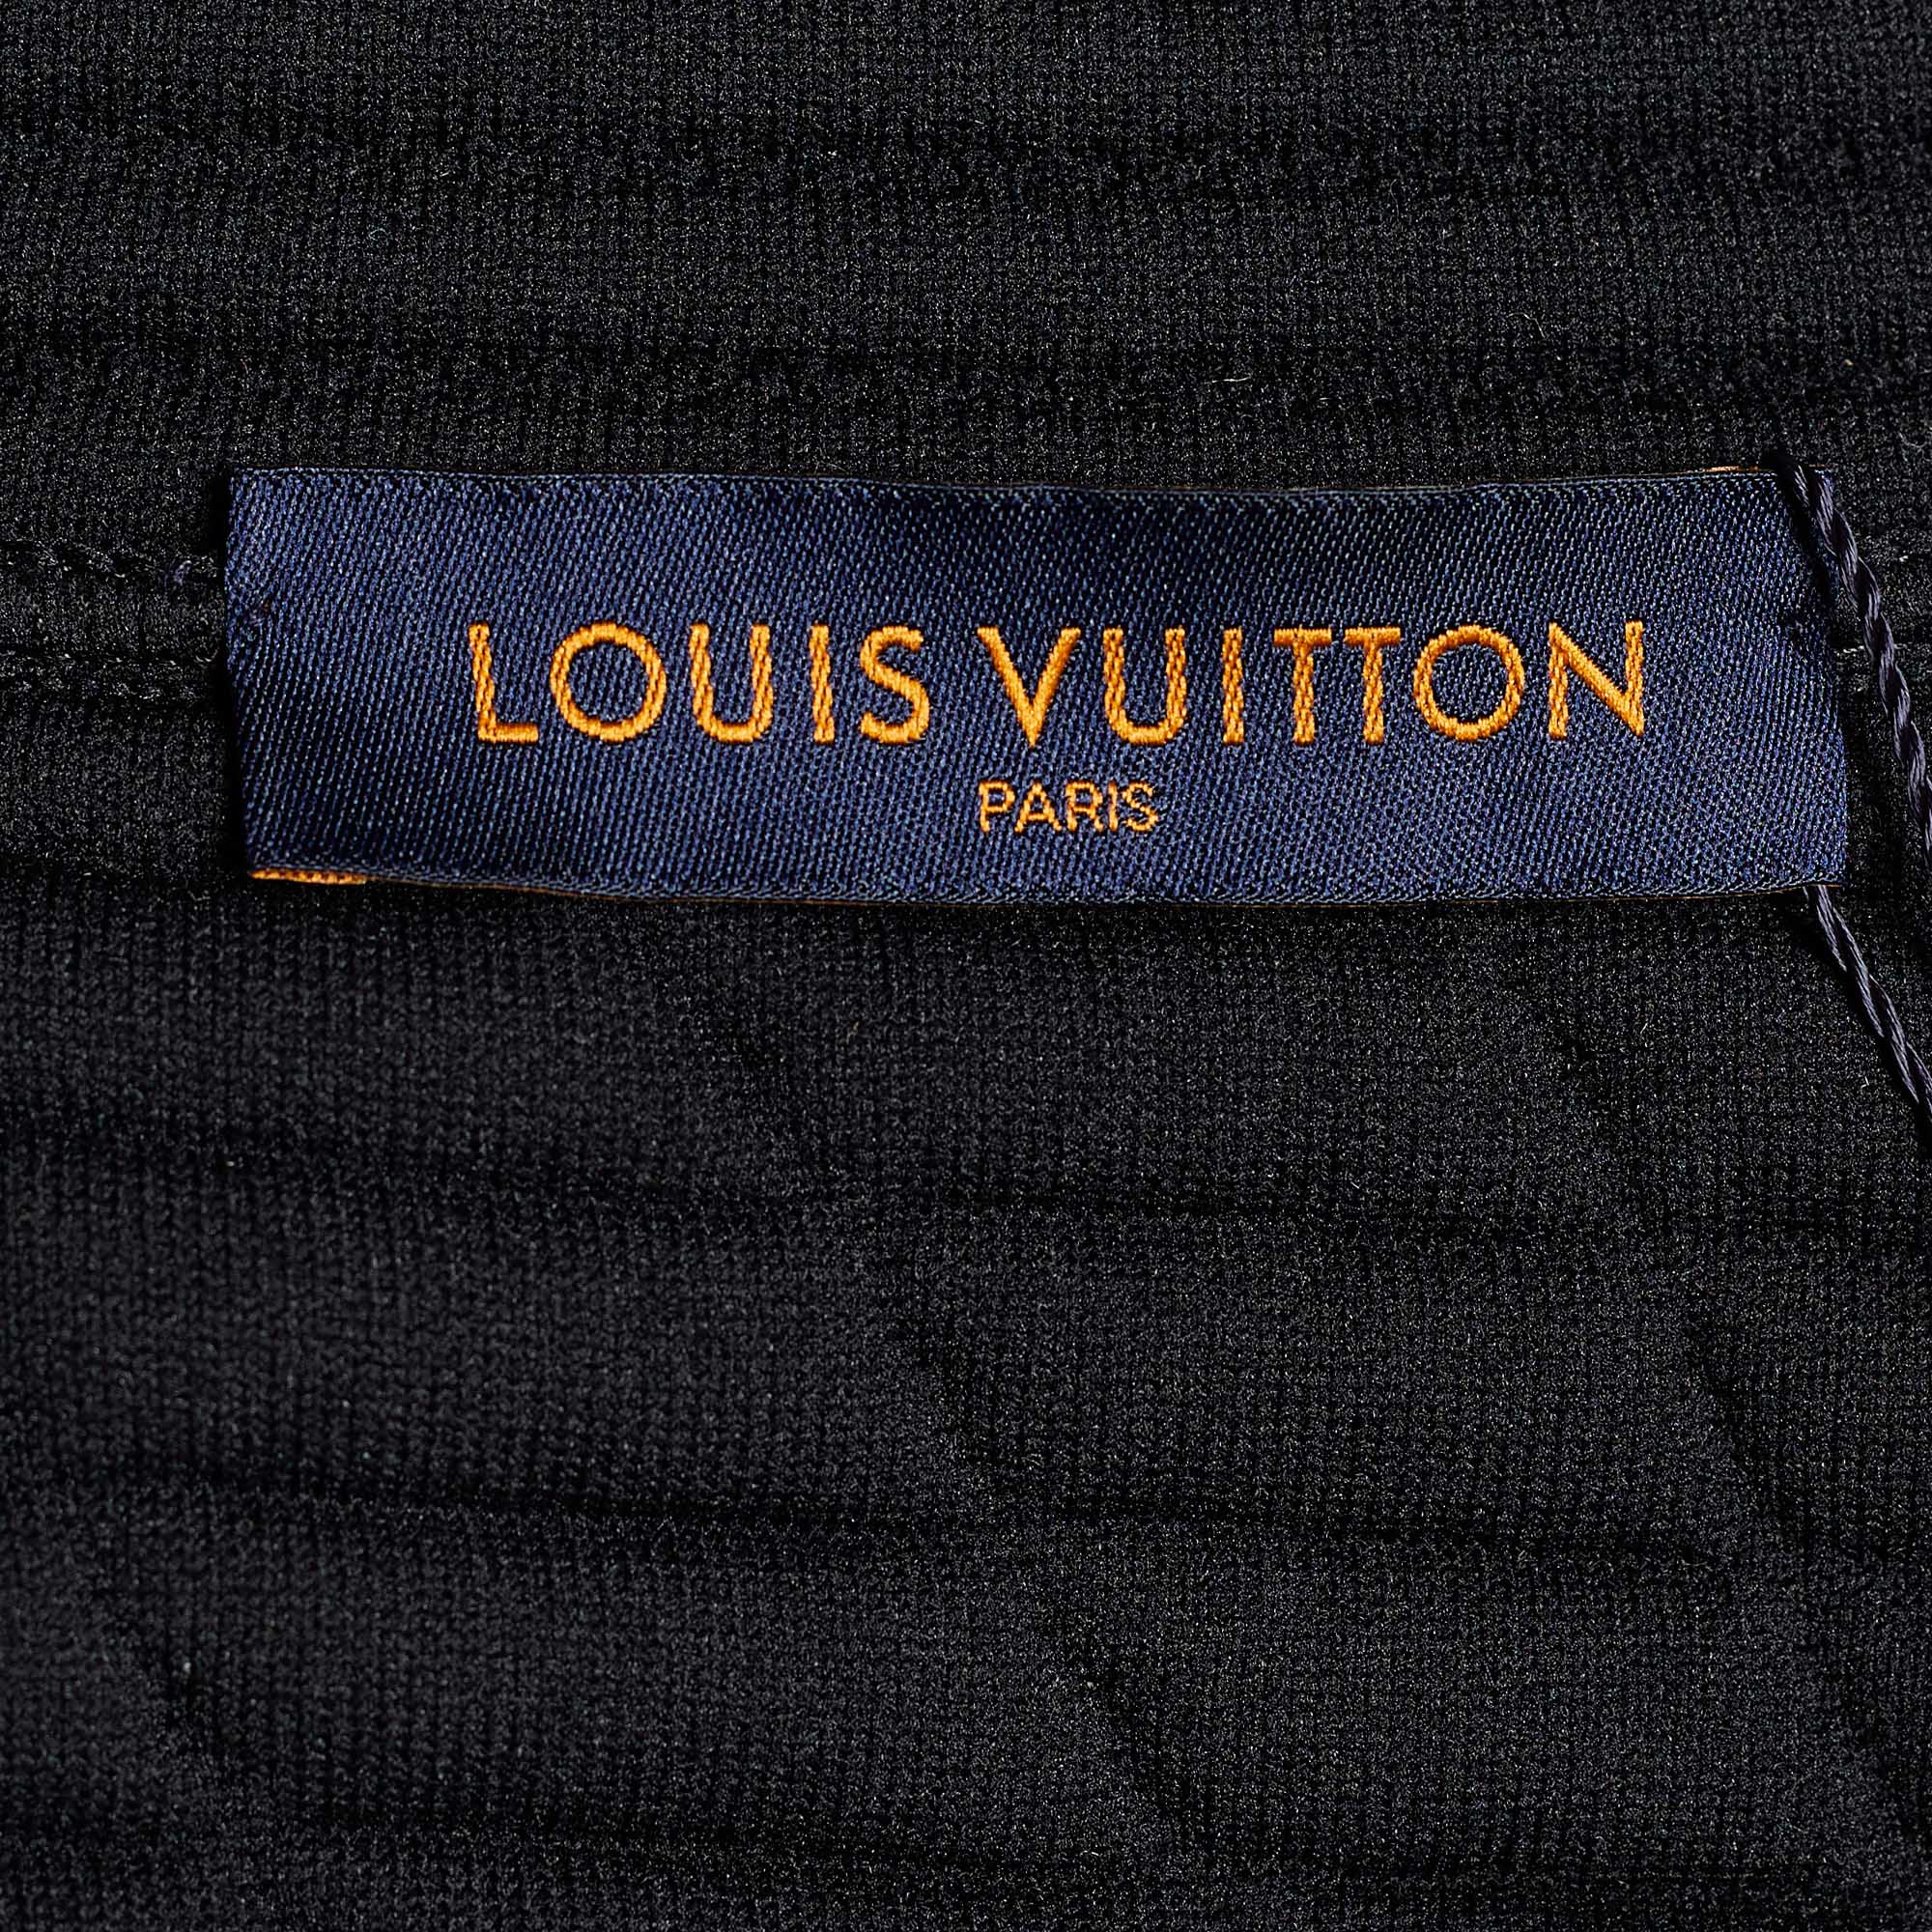 Louis Vuitton Black Quilted Plain Rainbow Zip Front Jacket XL Louis Vuitton